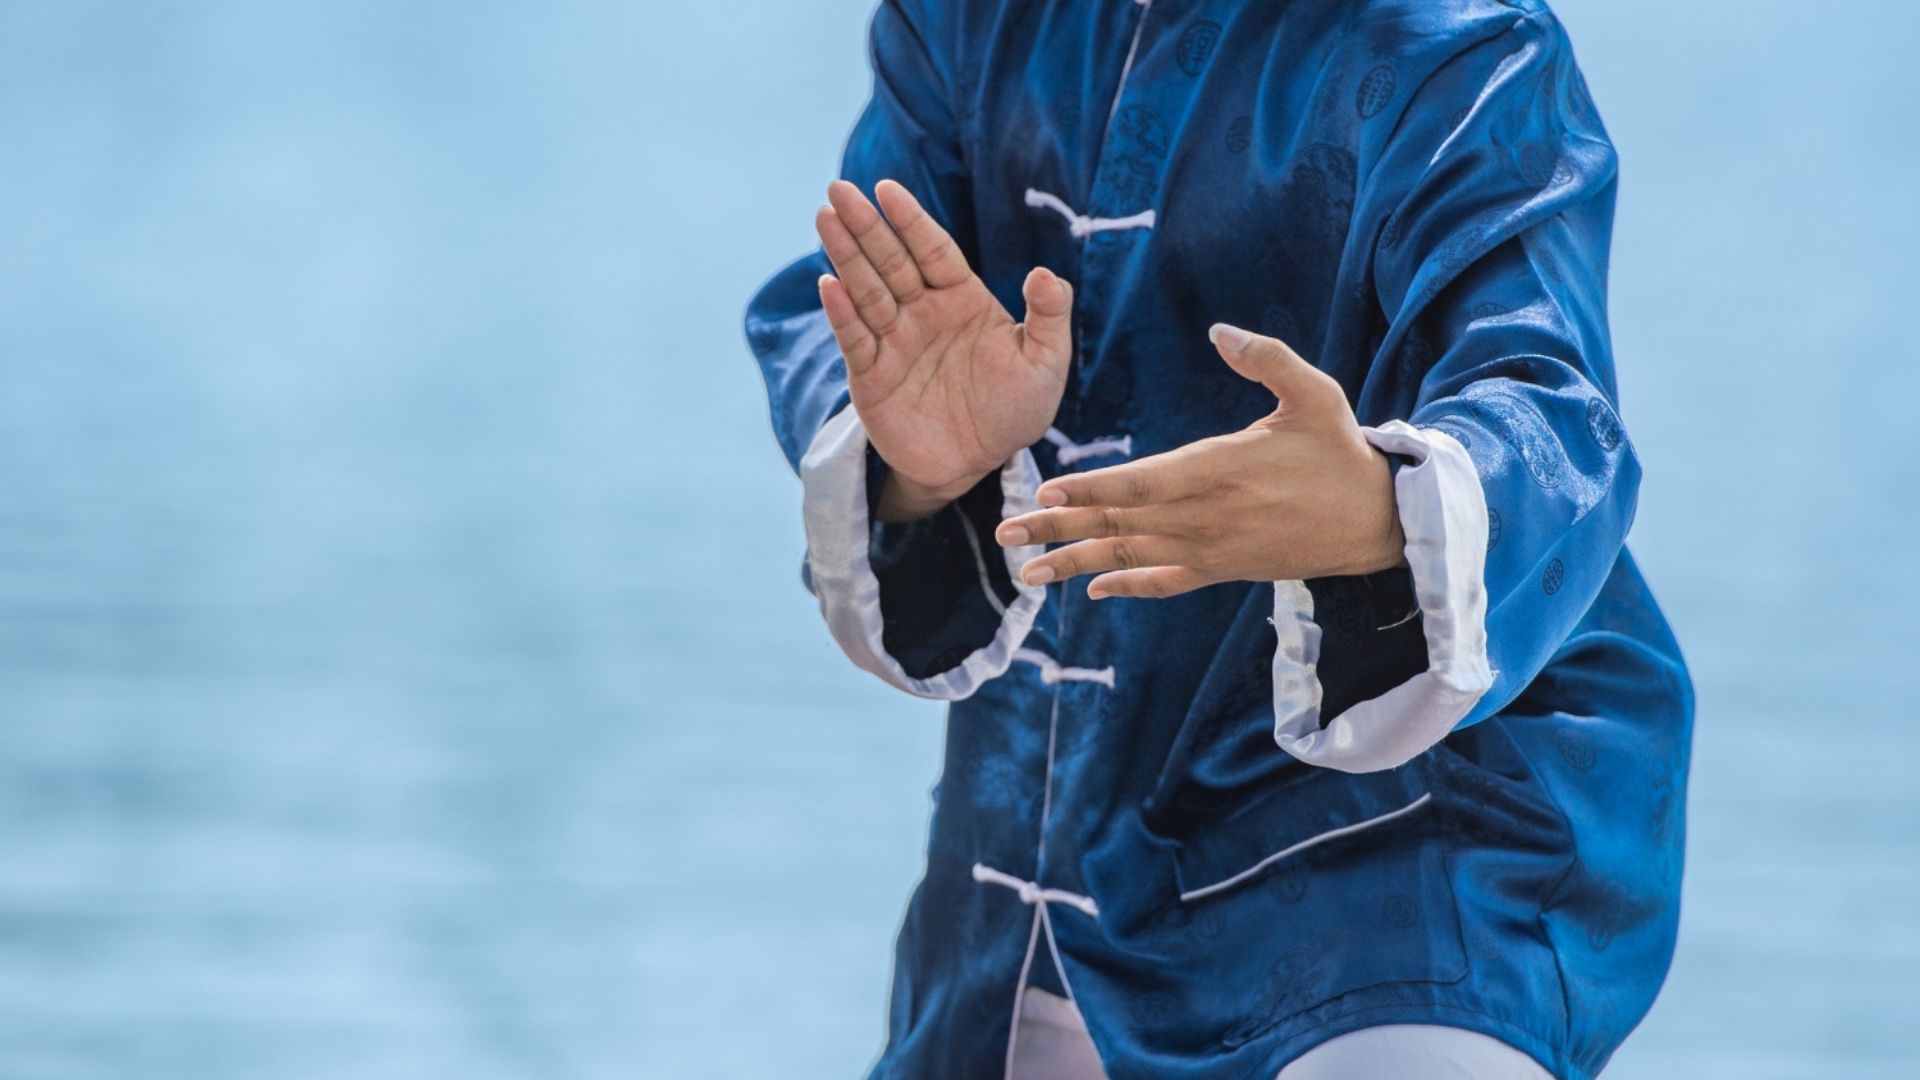 Foto de capa do artigo "Tai Chi Chuan: a arte marcial que trabalha corpo, mente e espírito"